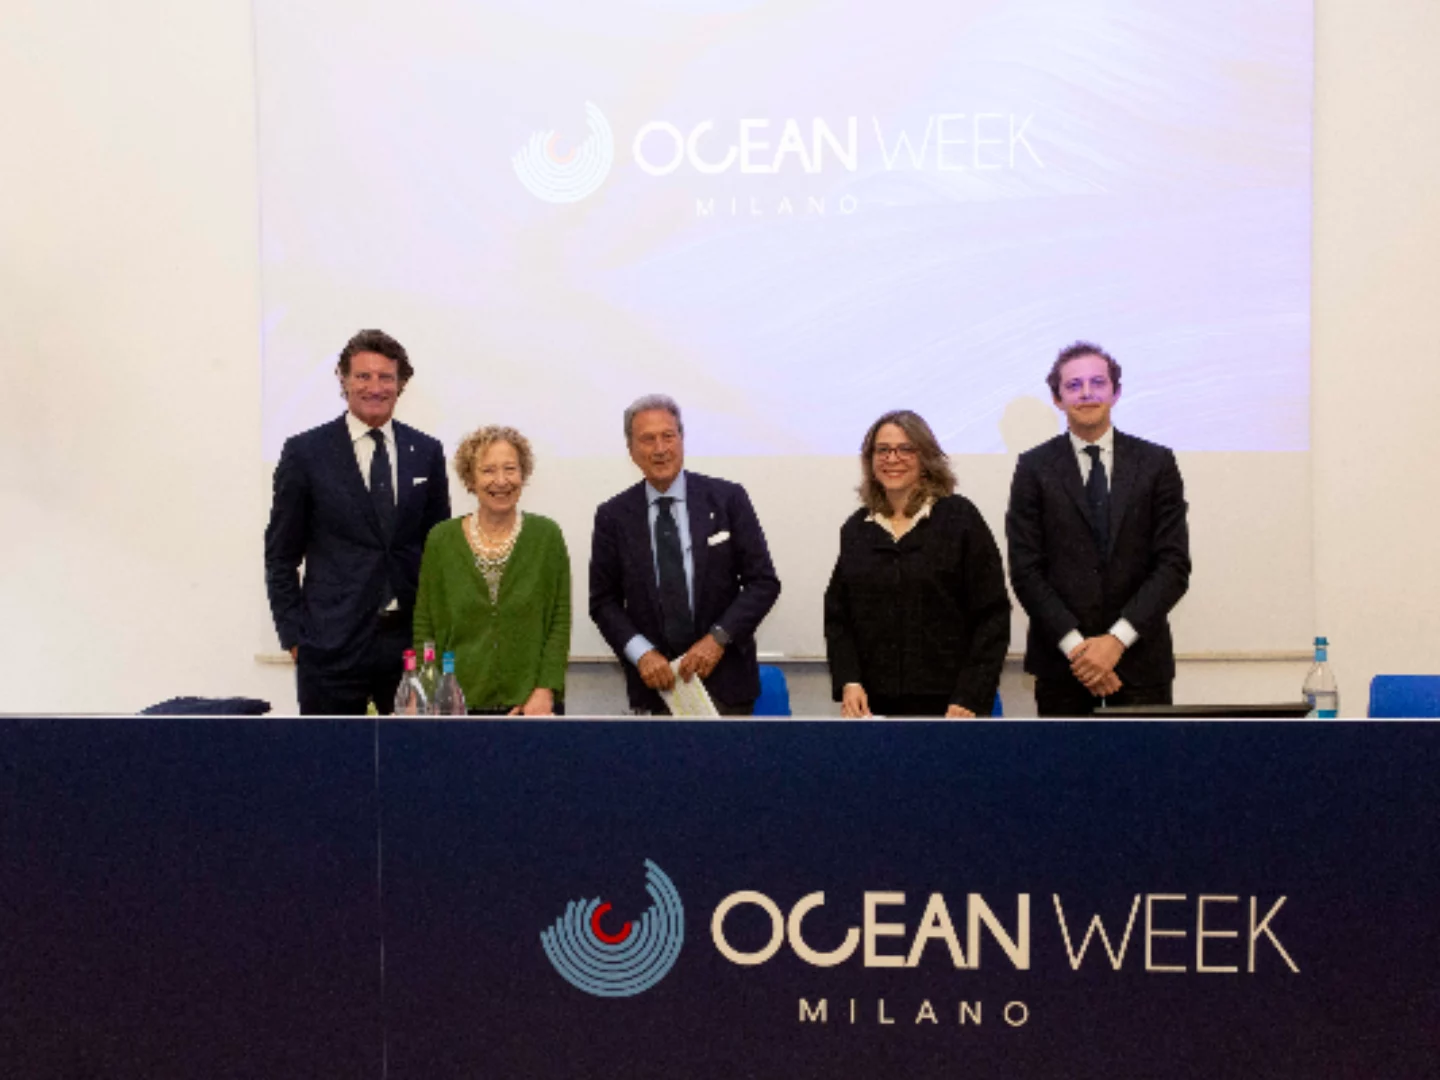 One Ocean Week Milano, dal 3 al 9 giugno